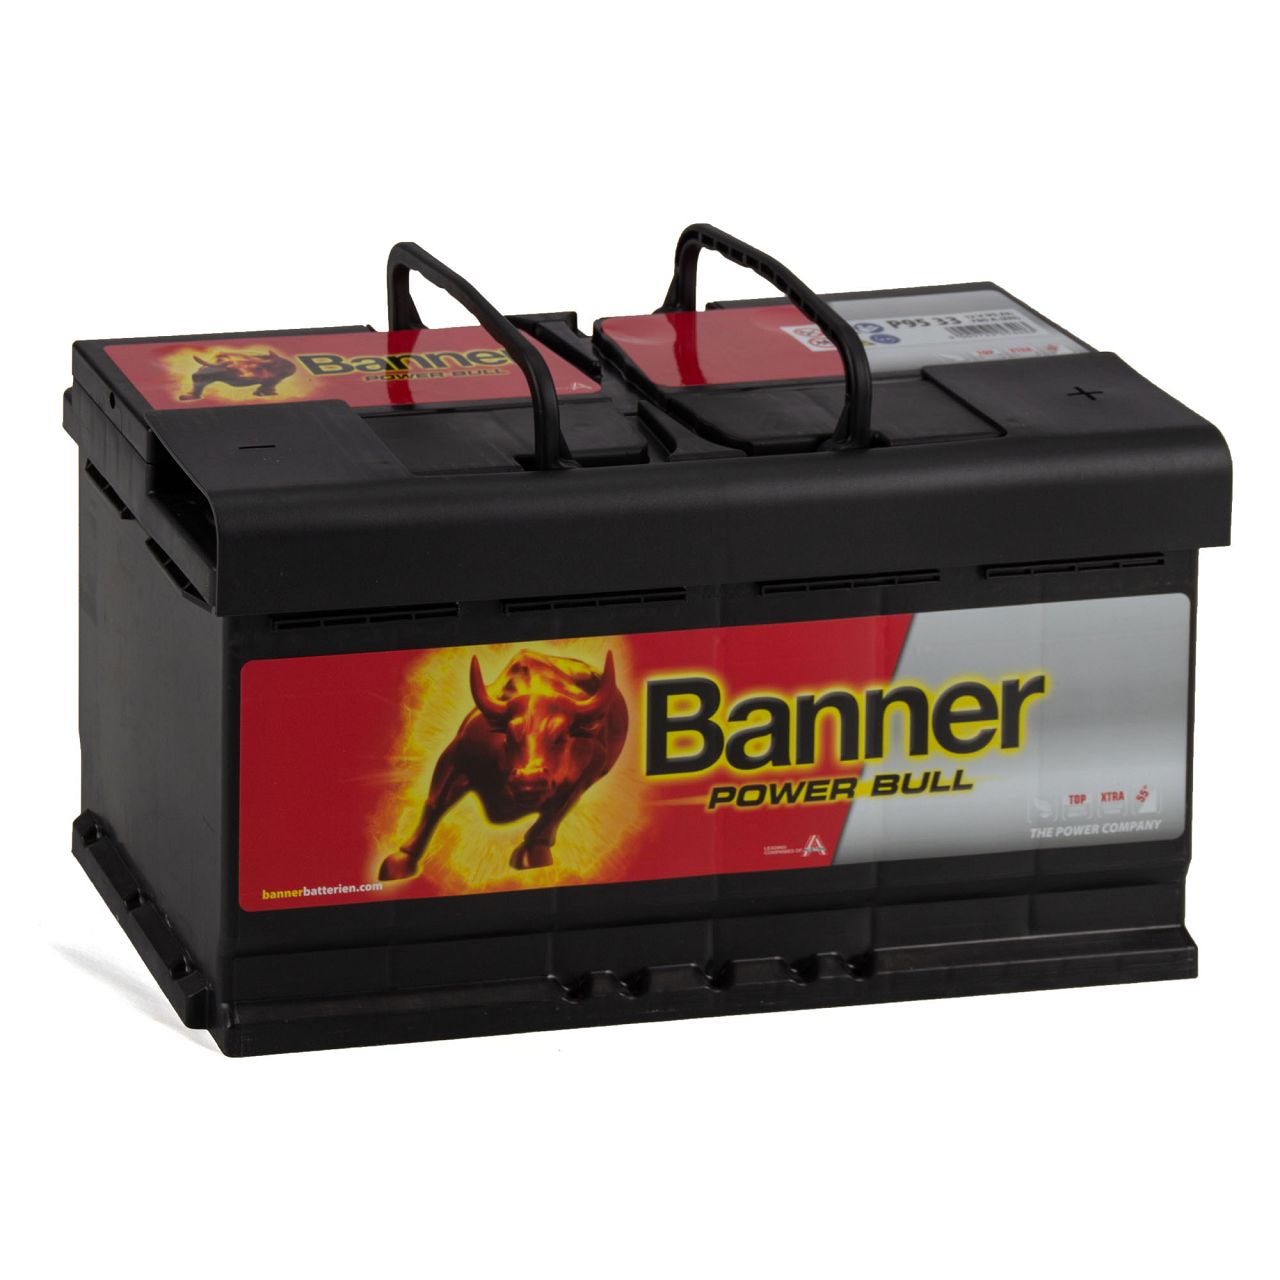 BANNER 59533 P9533 Power Bull Autobatterie Batterie 12V 95Ah 780A